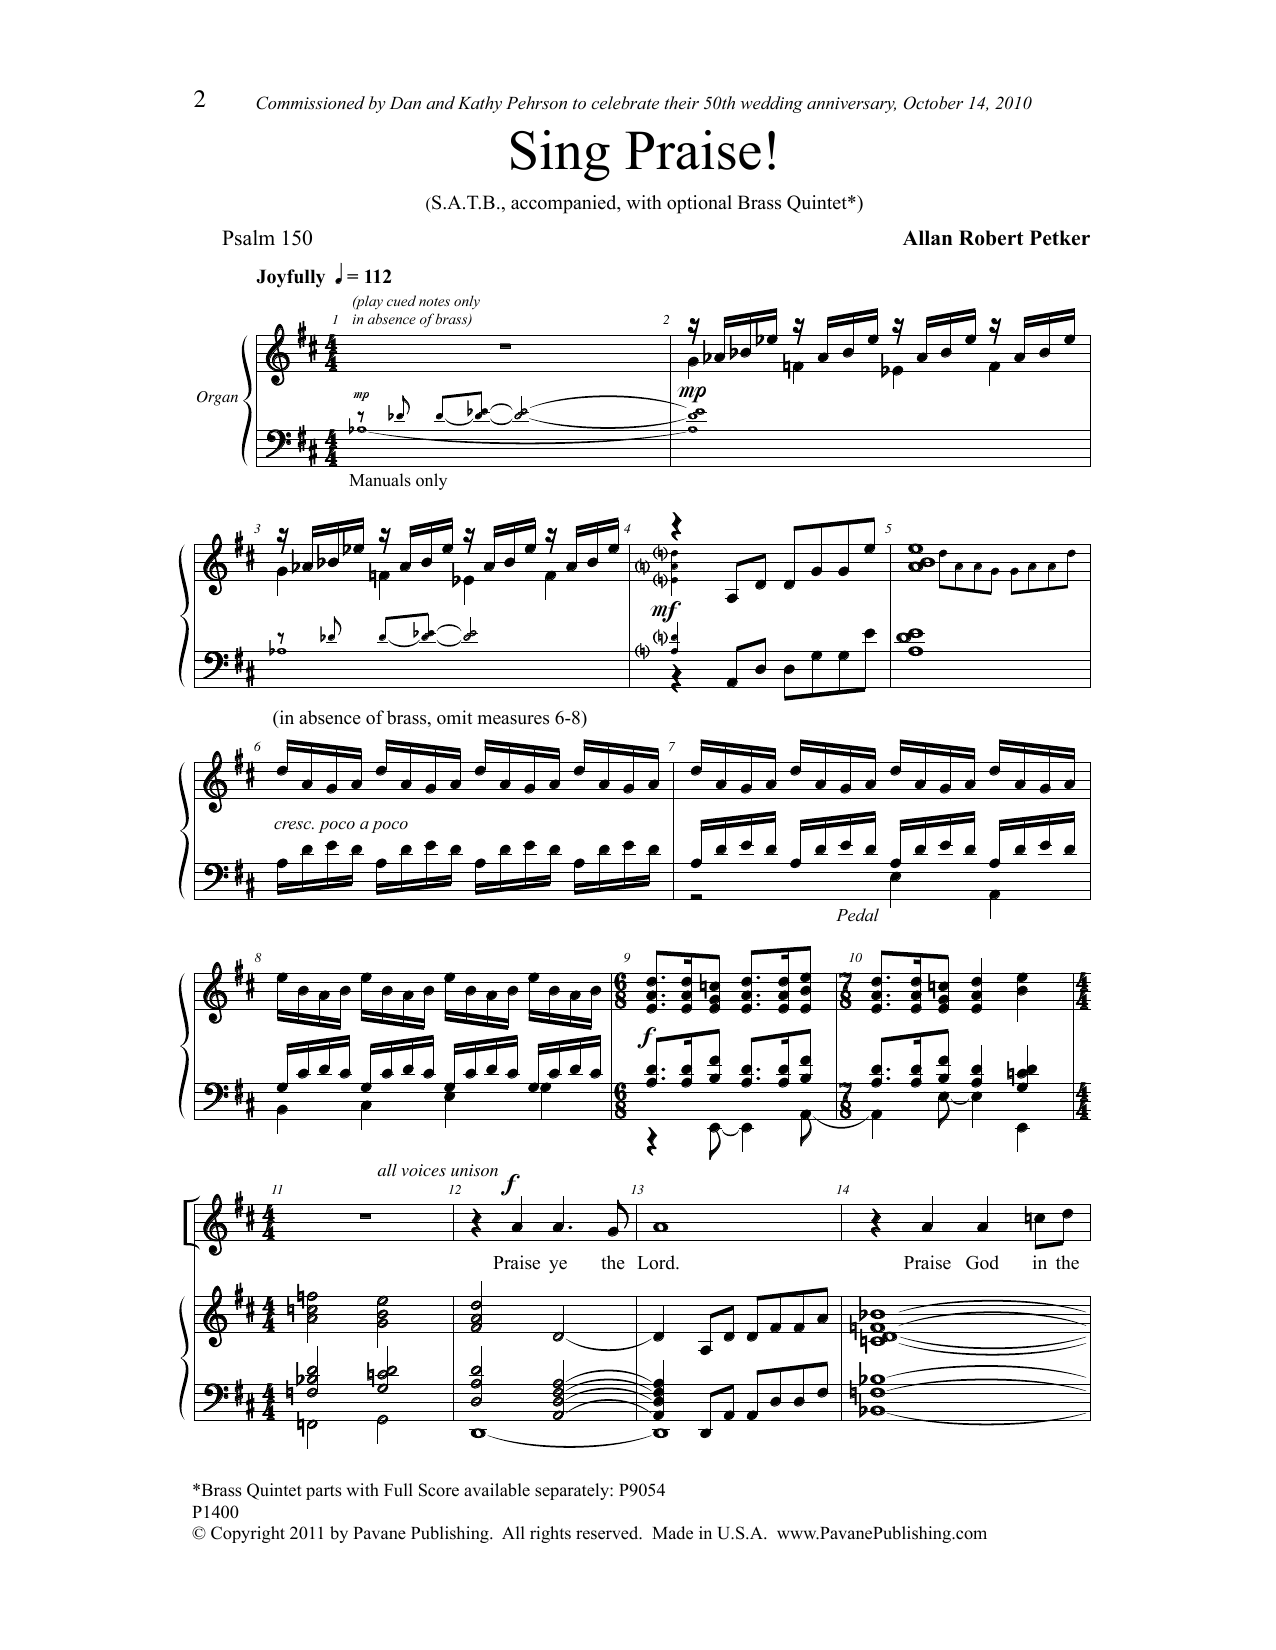 Allan Robert Petker Sing Praise! Sheet Music Notes & Chords for Choral - Download or Print PDF